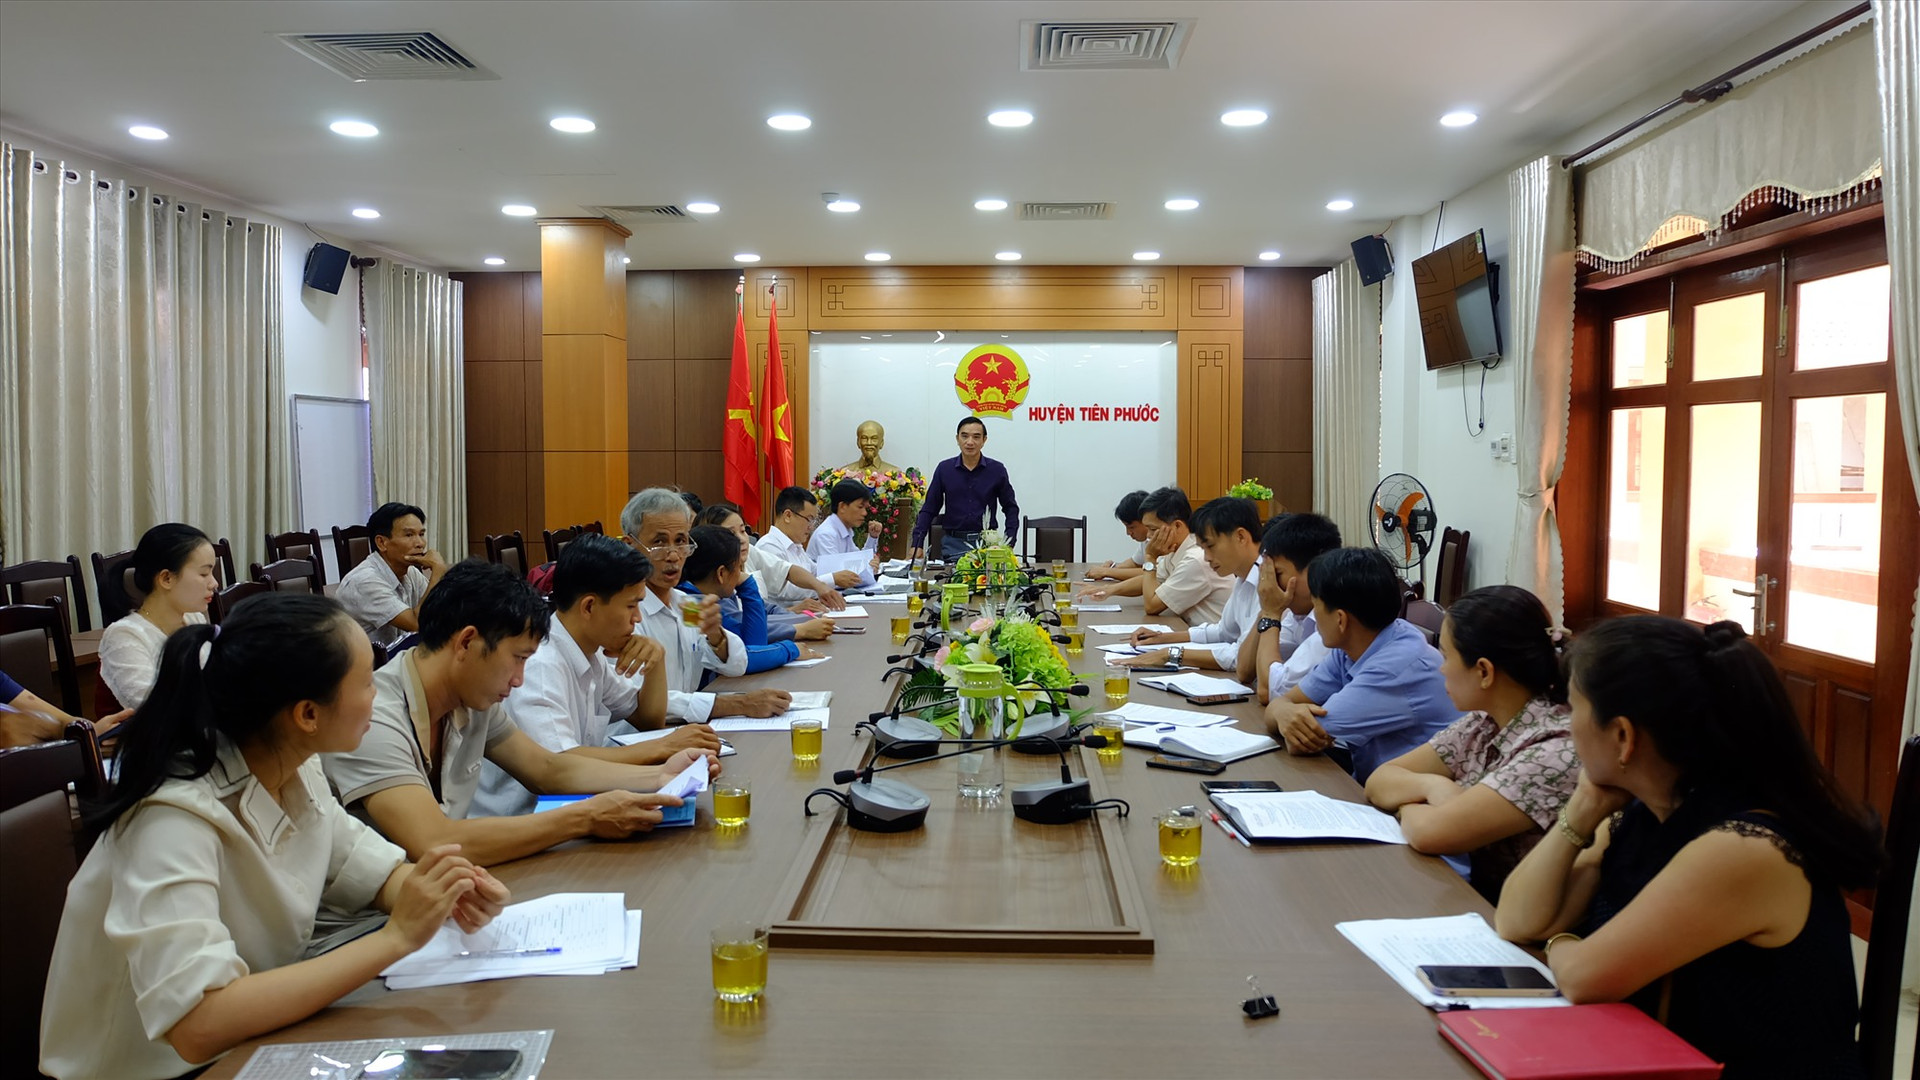 Đoàn công tác liên ngành làm việc với huyện Tiên Phước về hướng dẫn, hỗ trợ chủ thể hoàn thiện hồ sơ tham gia chương trình OCOP năm 2023. Ảnh: M.L